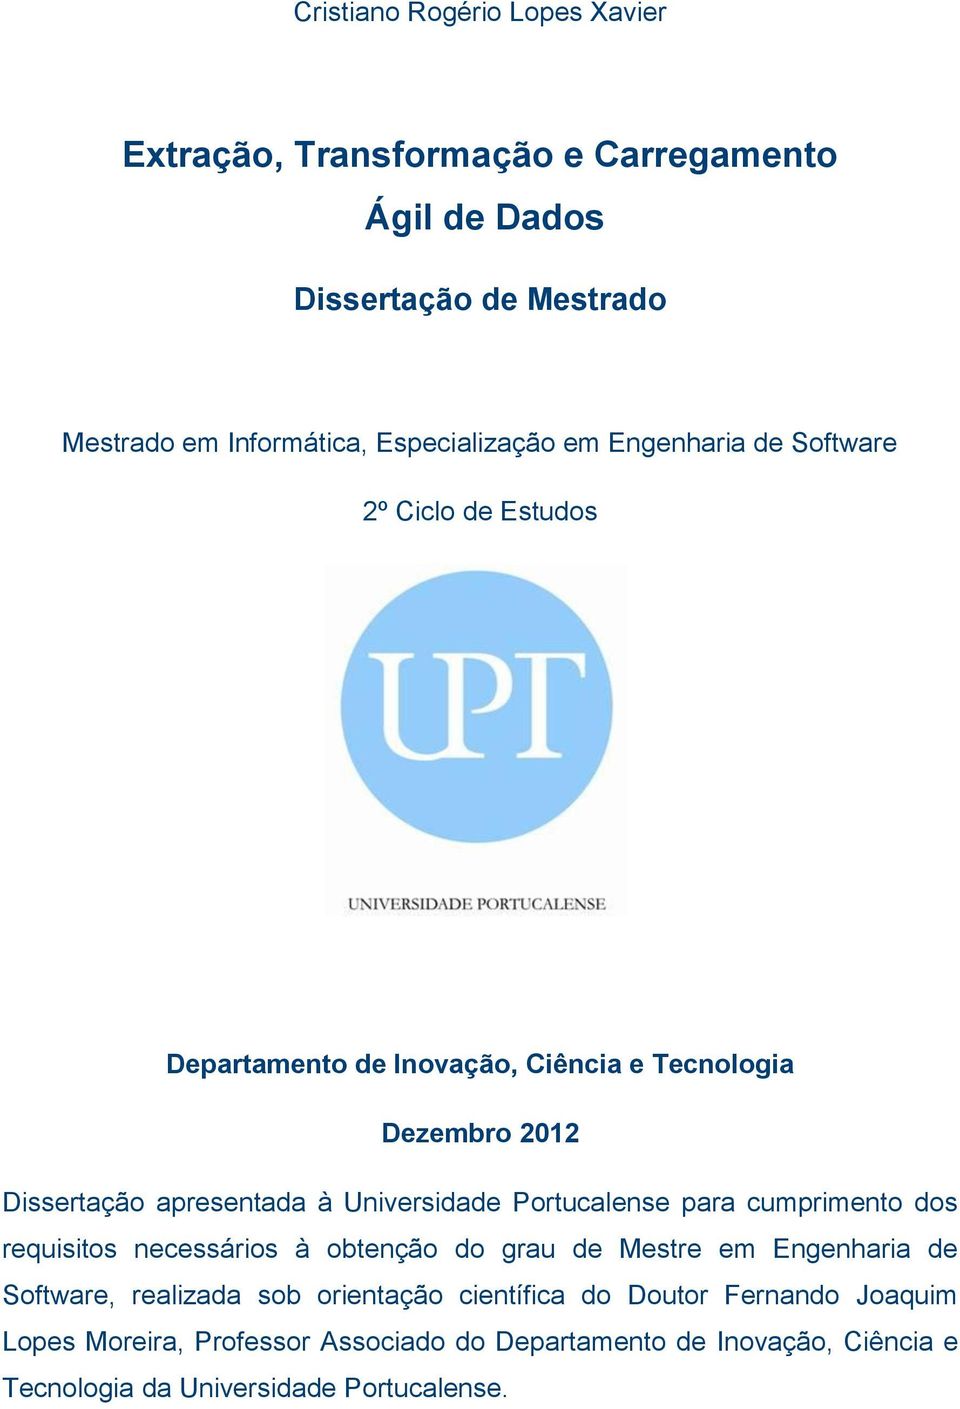 à Universidade Portucalense para cumprimento dos requisitos necessários à obtenção do grau de Mestre em Engenharia de Software, realizada sob